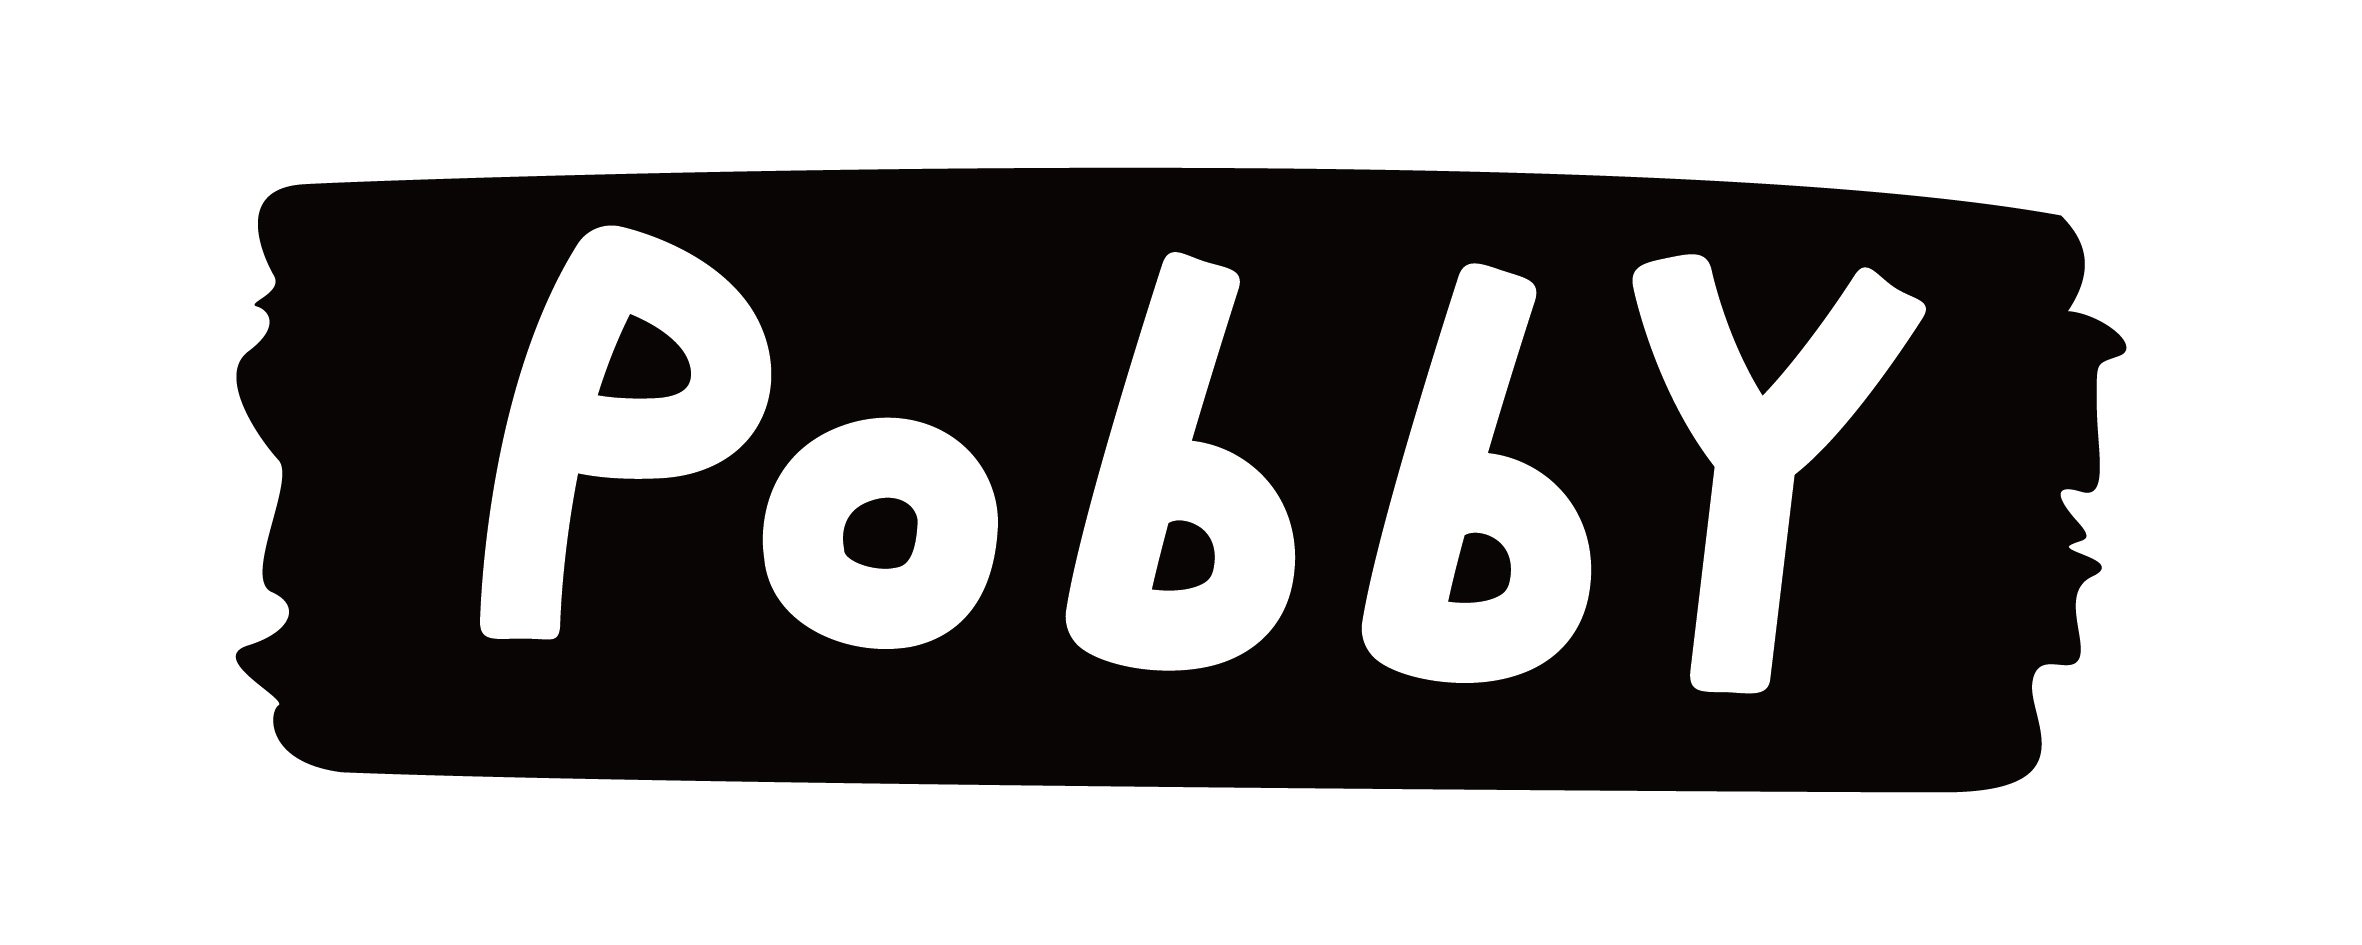  POBBY